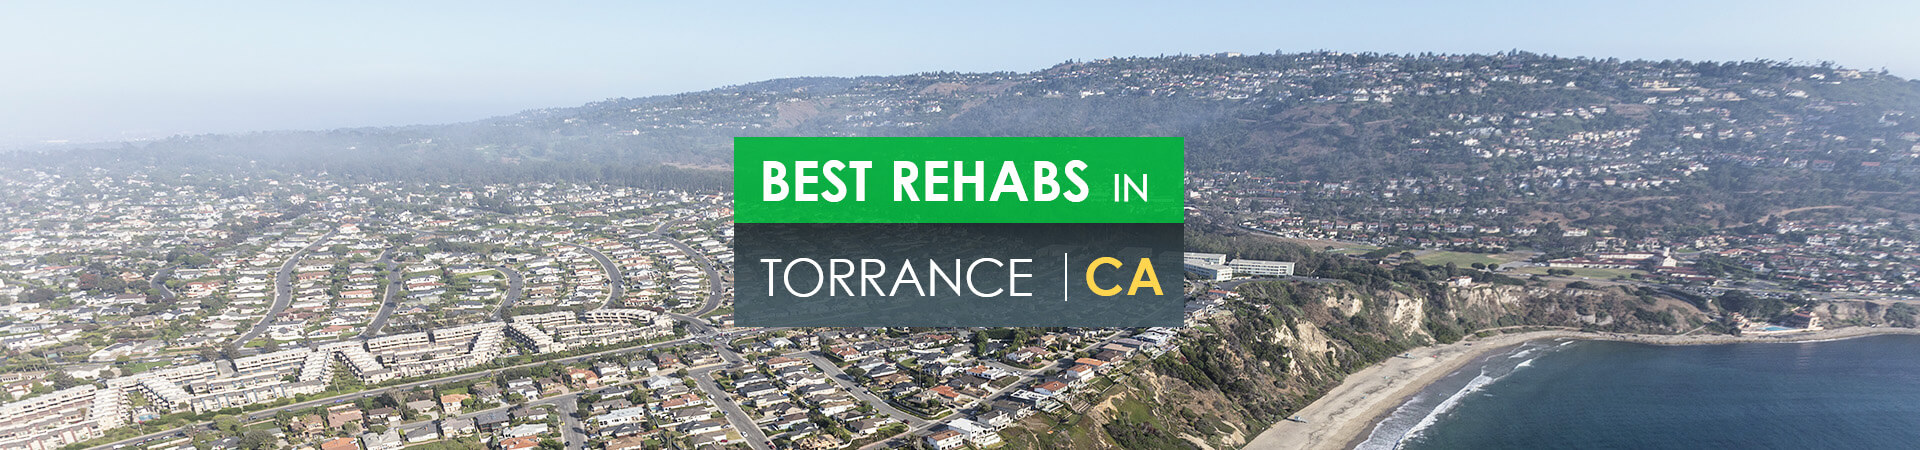 Best rehabs in Torrance, CA